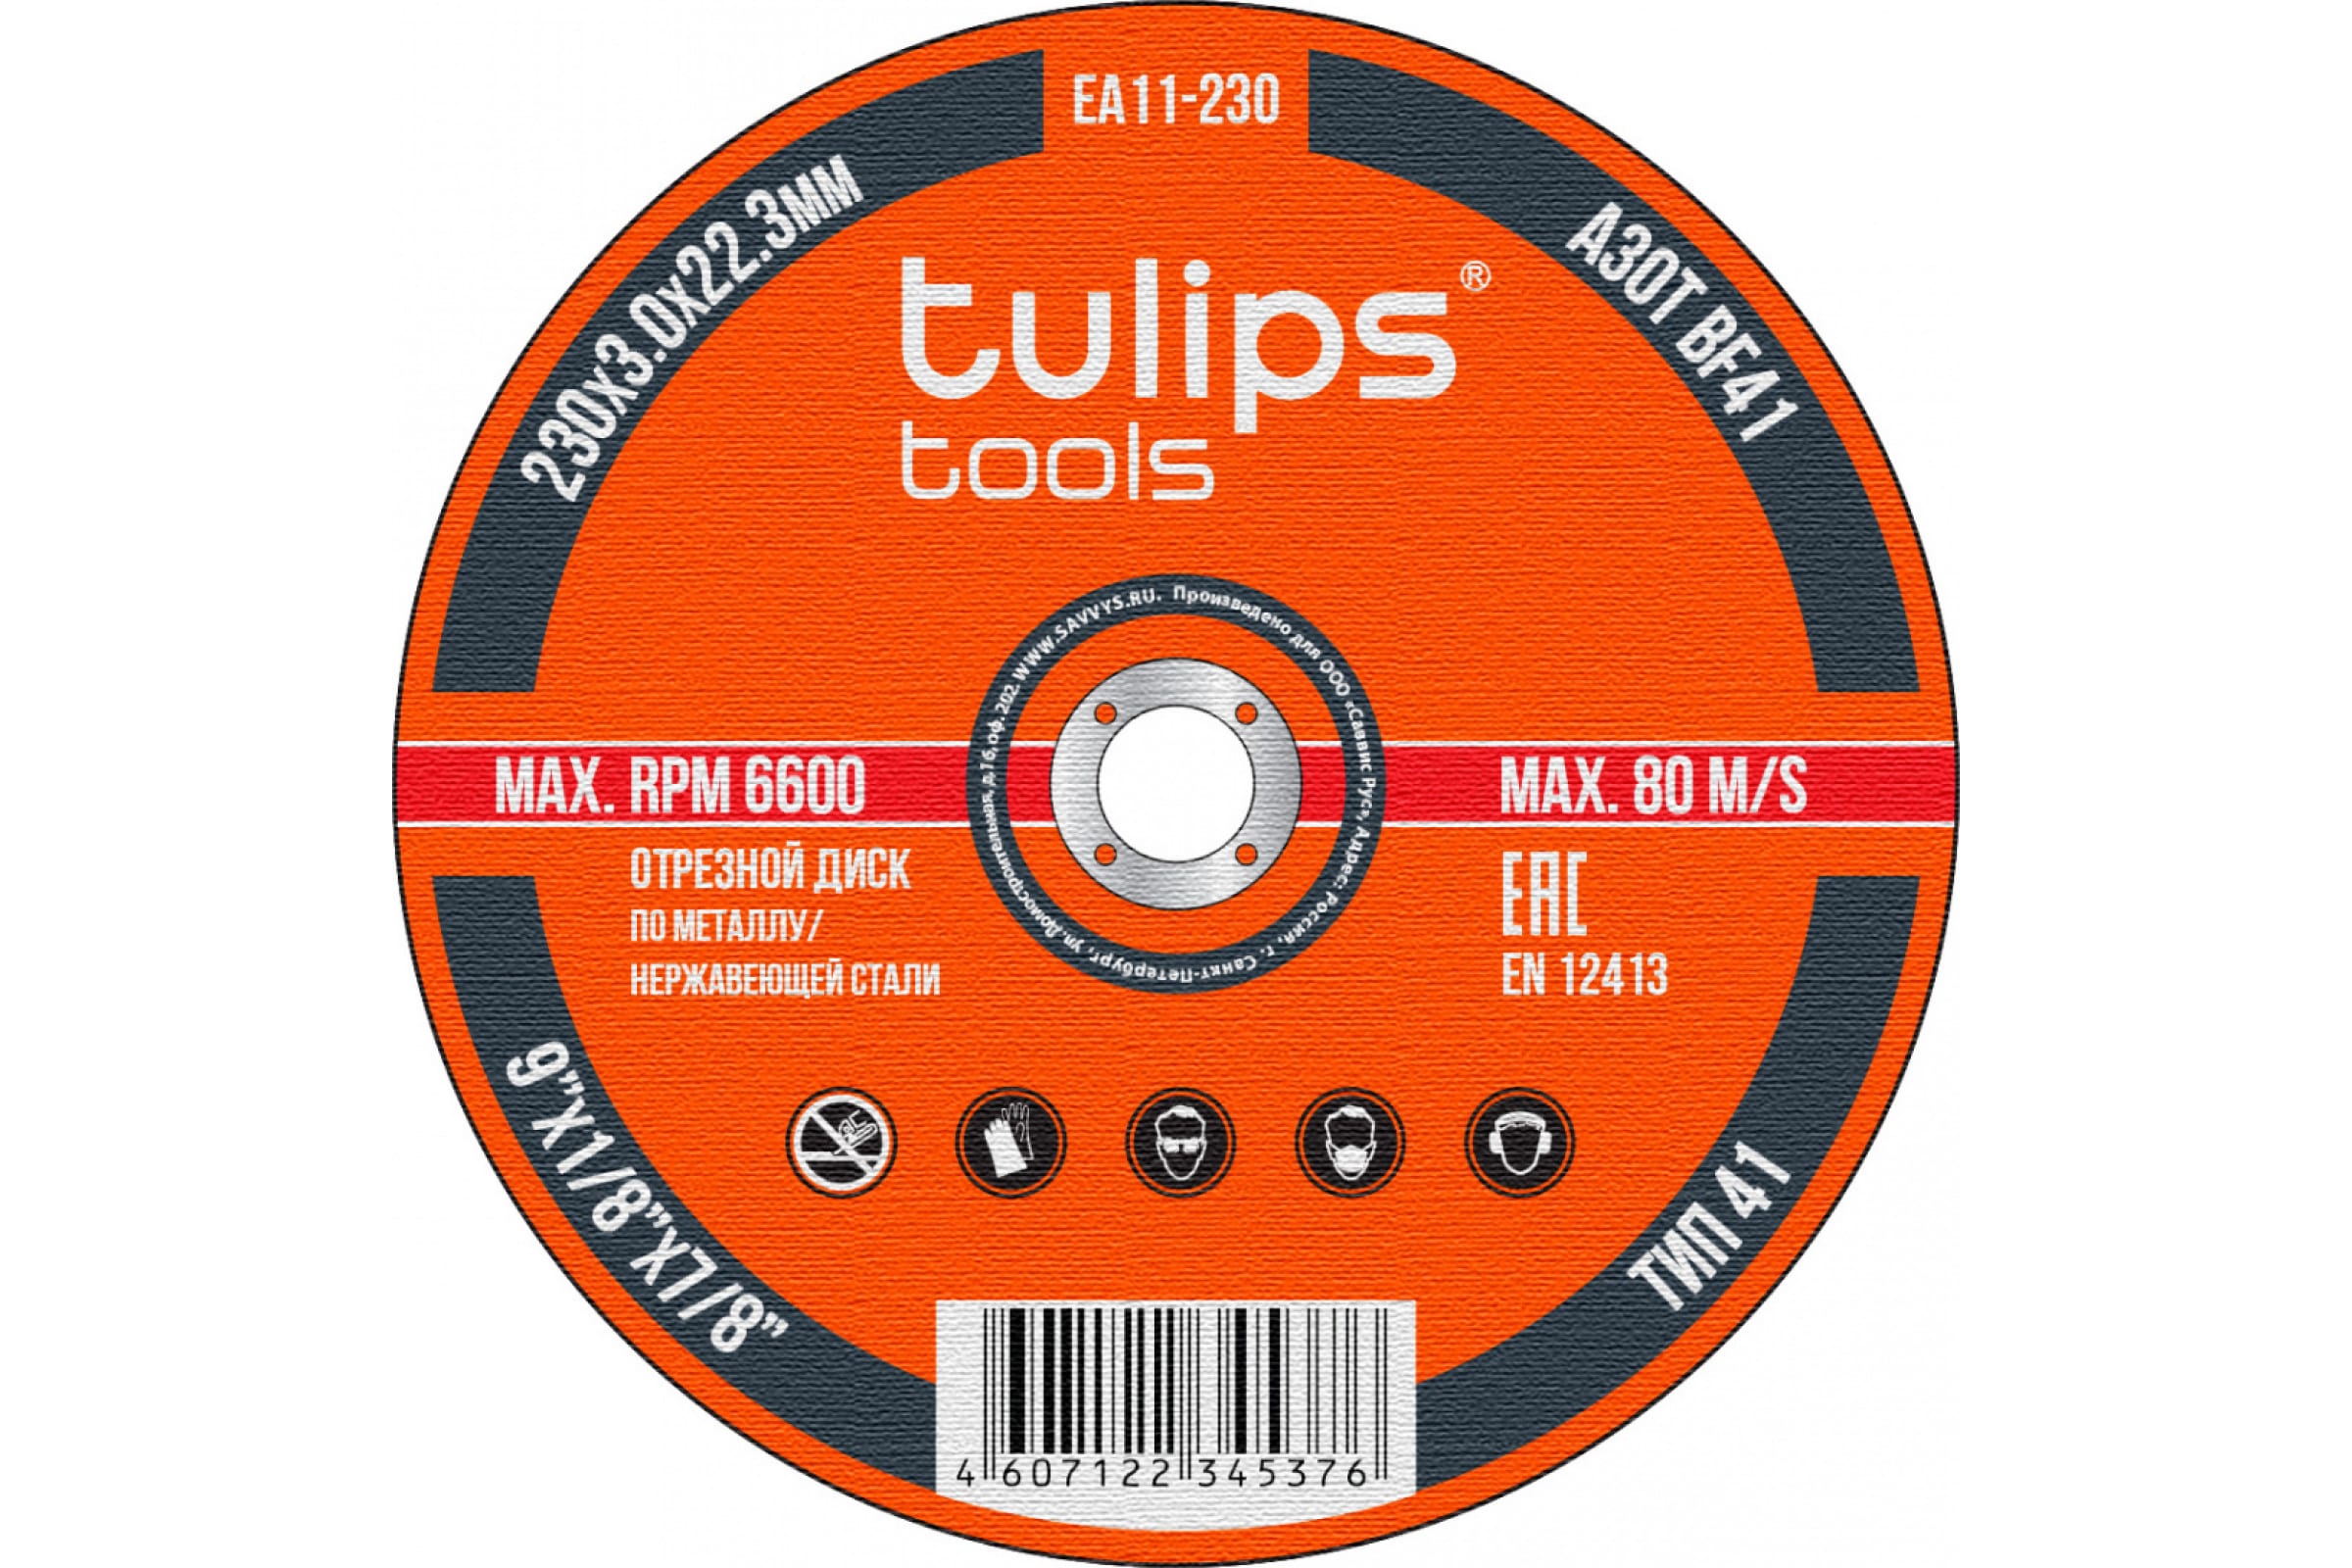 фото Tulips tools диск отрезной по металлу, 230 мм, 3.0, a30tbf ea11-230